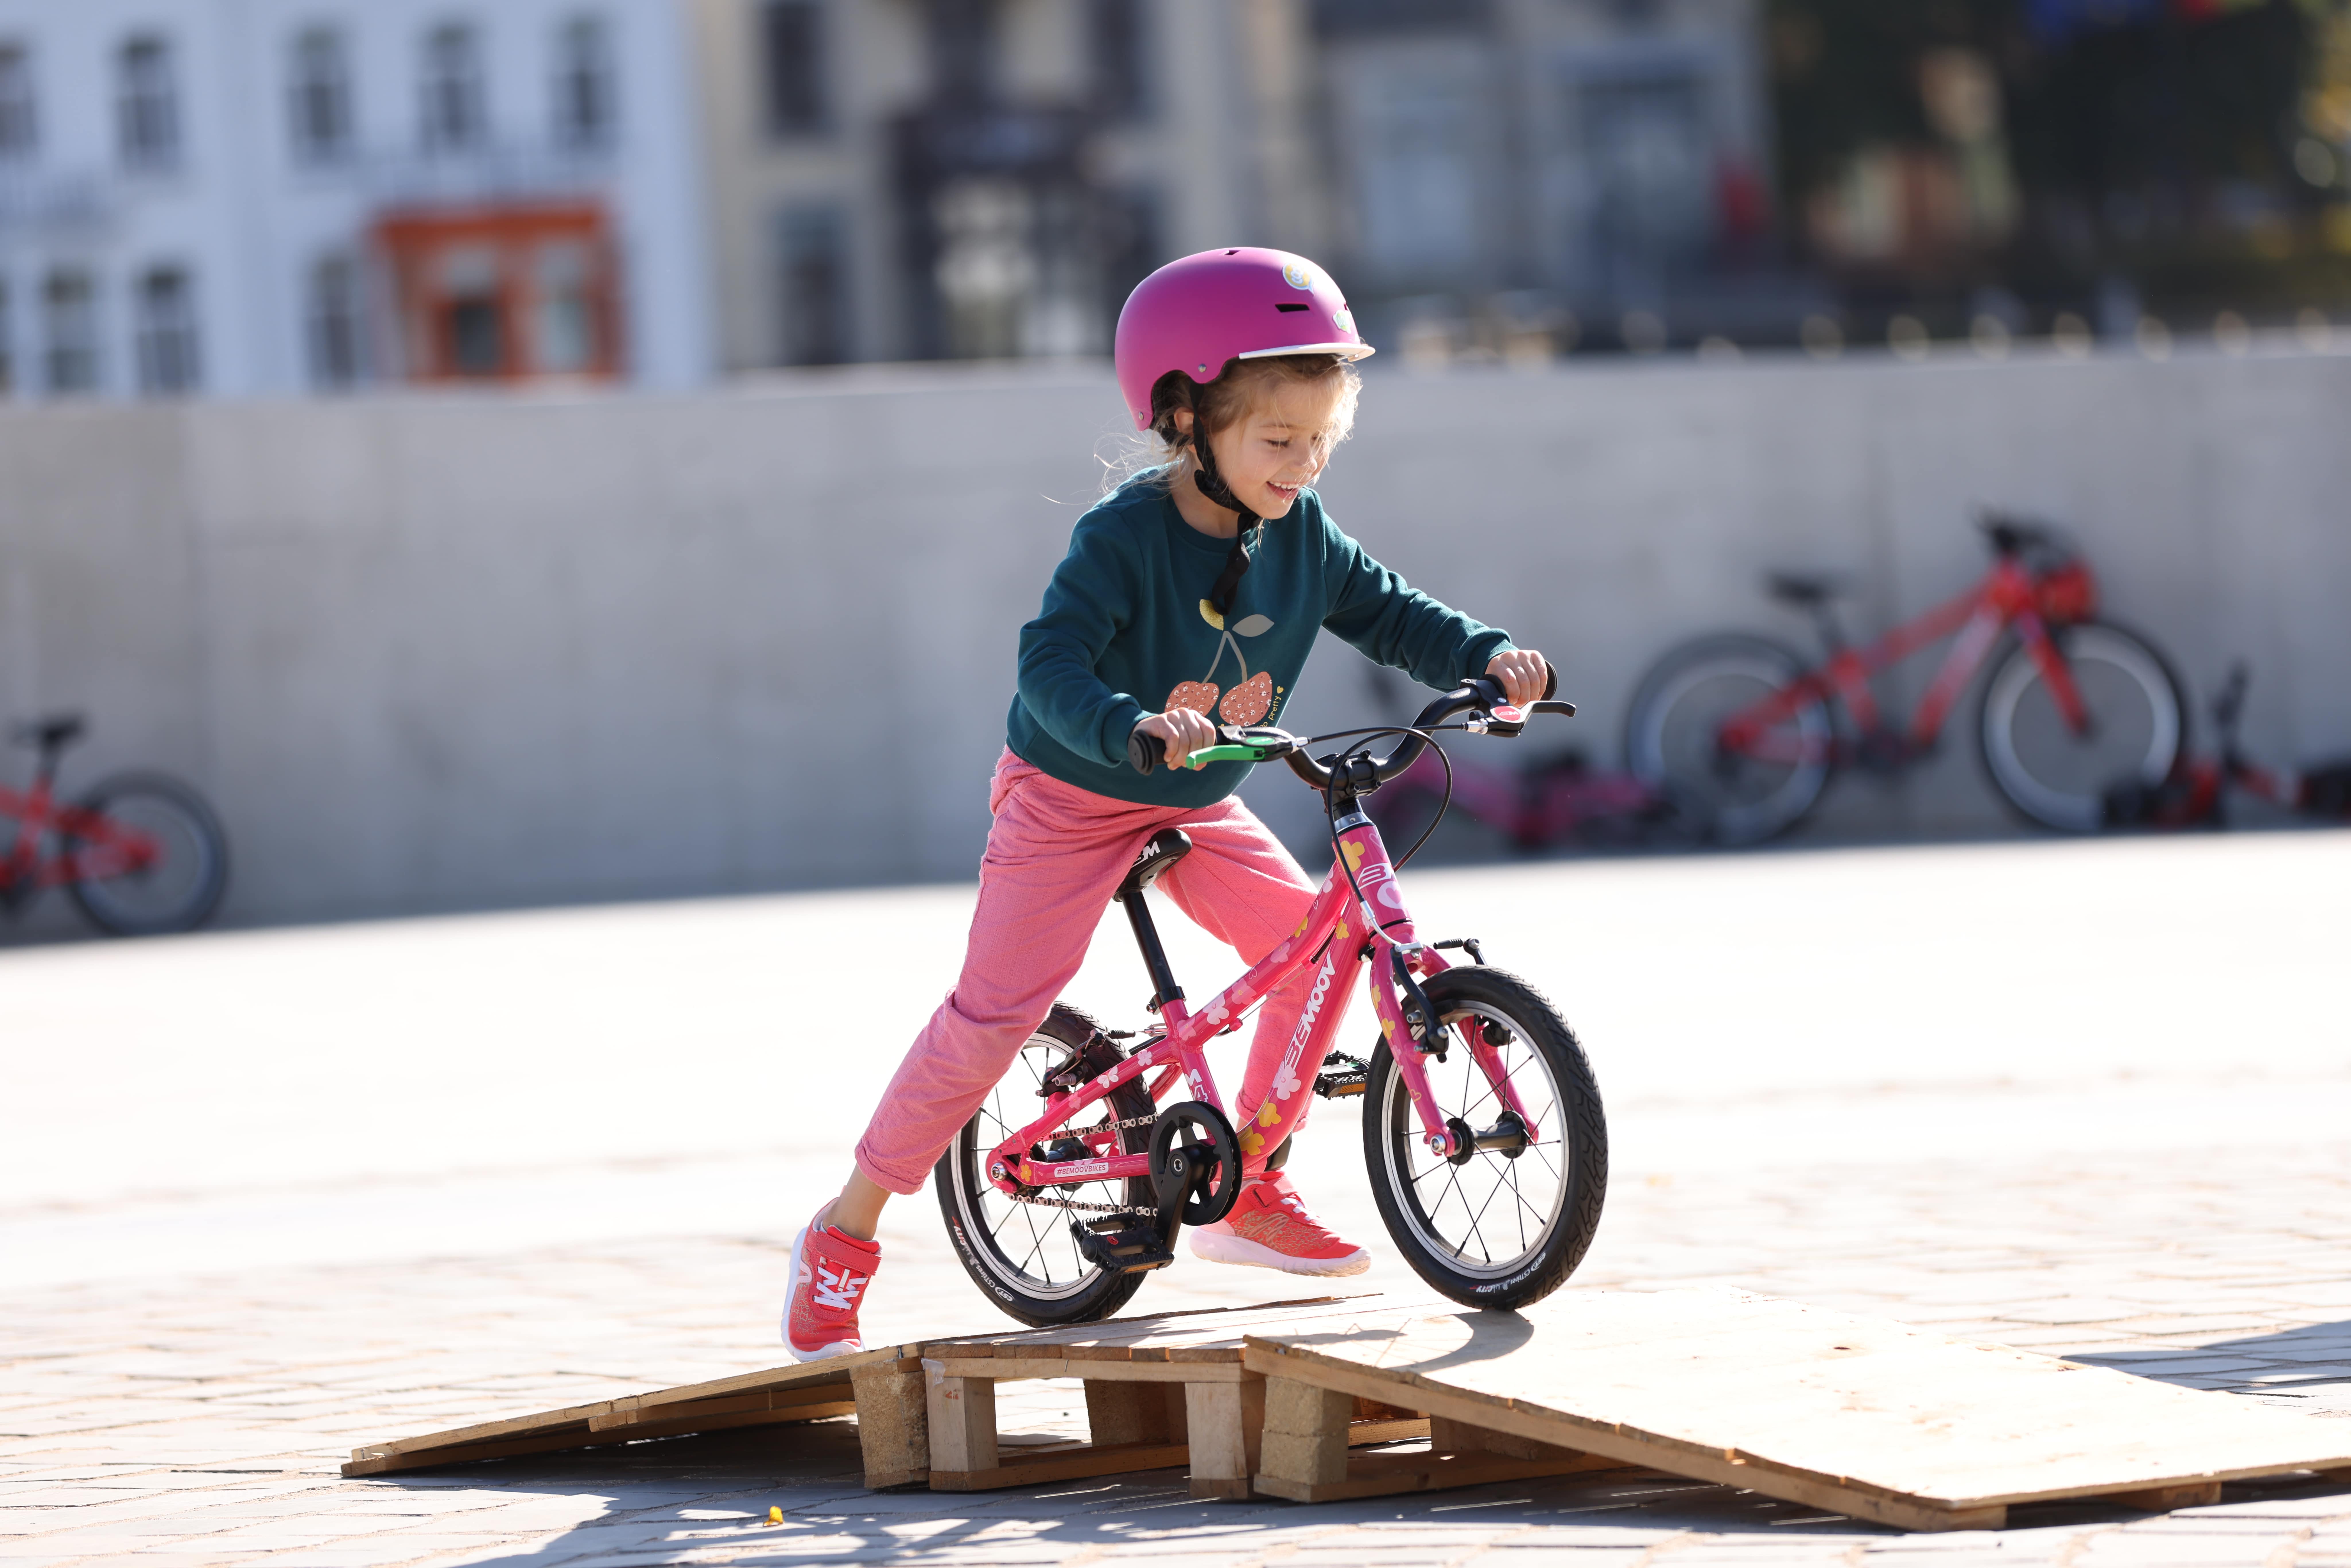 Protège roue de vélo avant pour les pieds des enfants